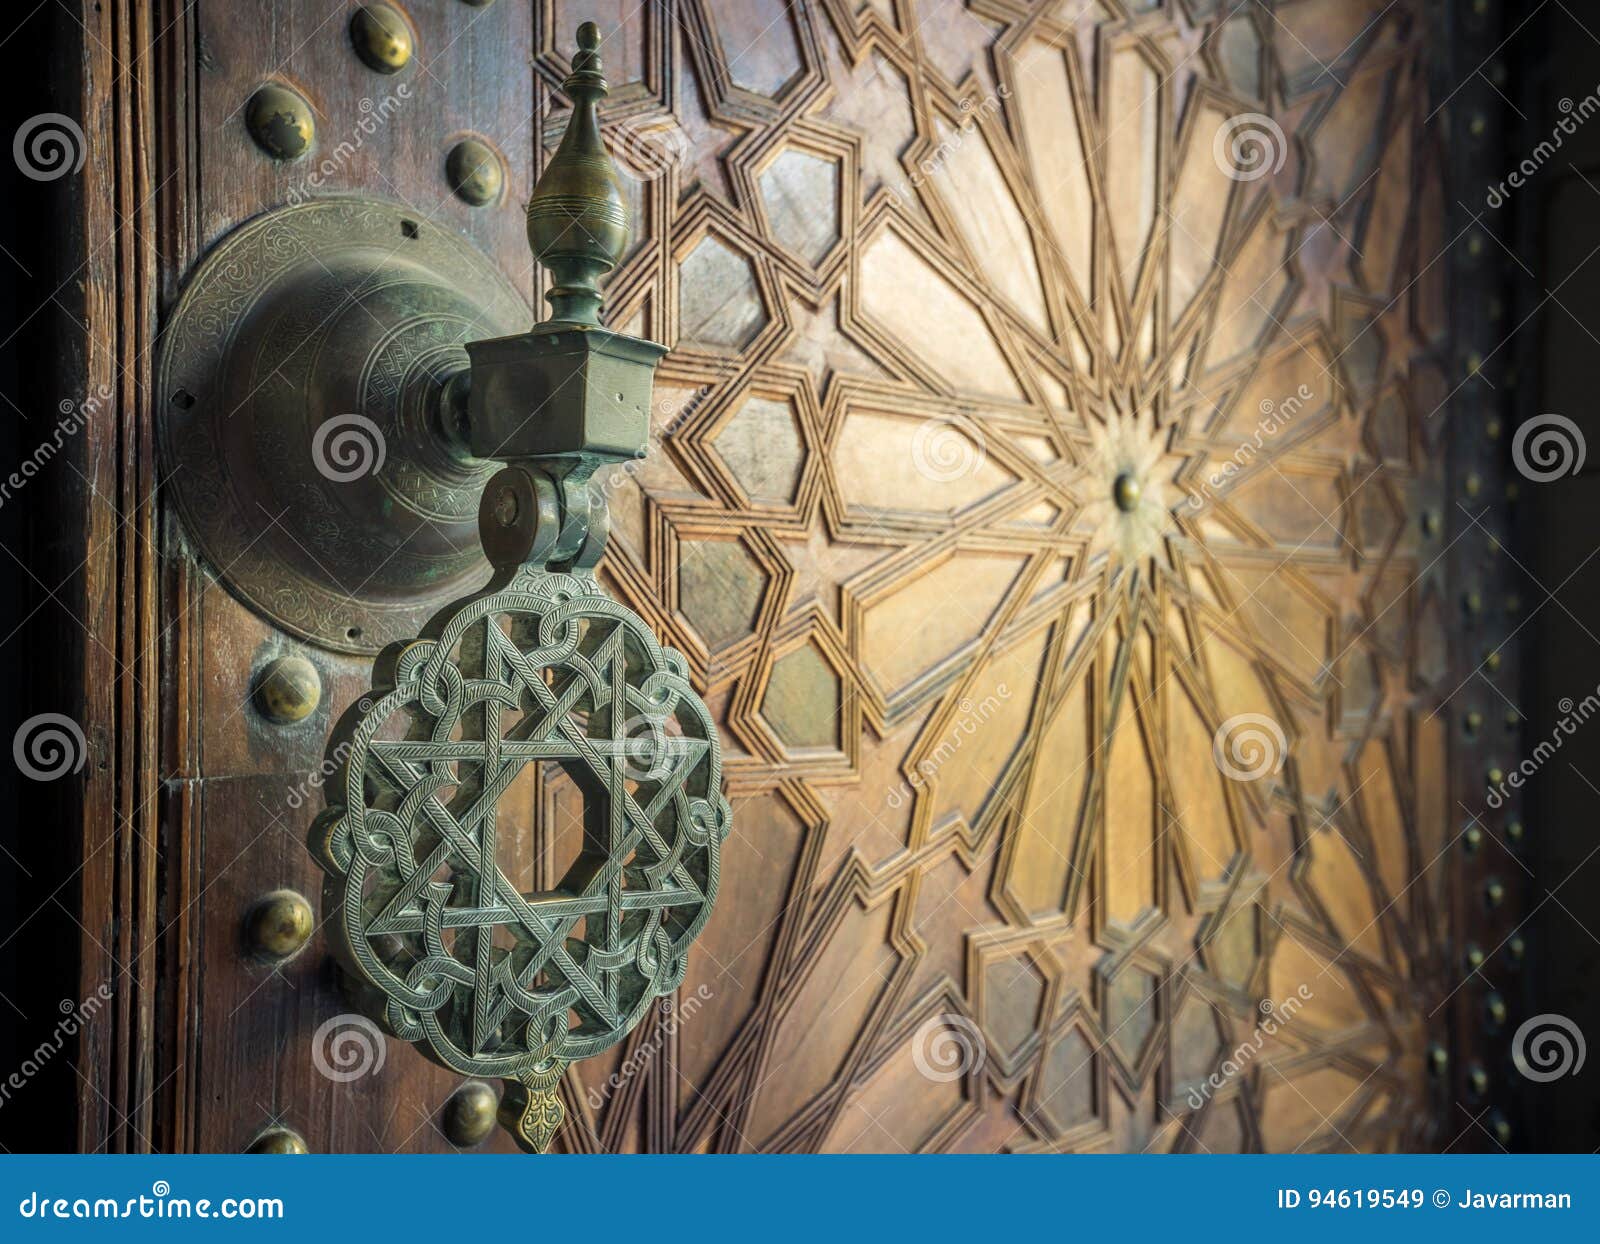 ancient moroccan doors